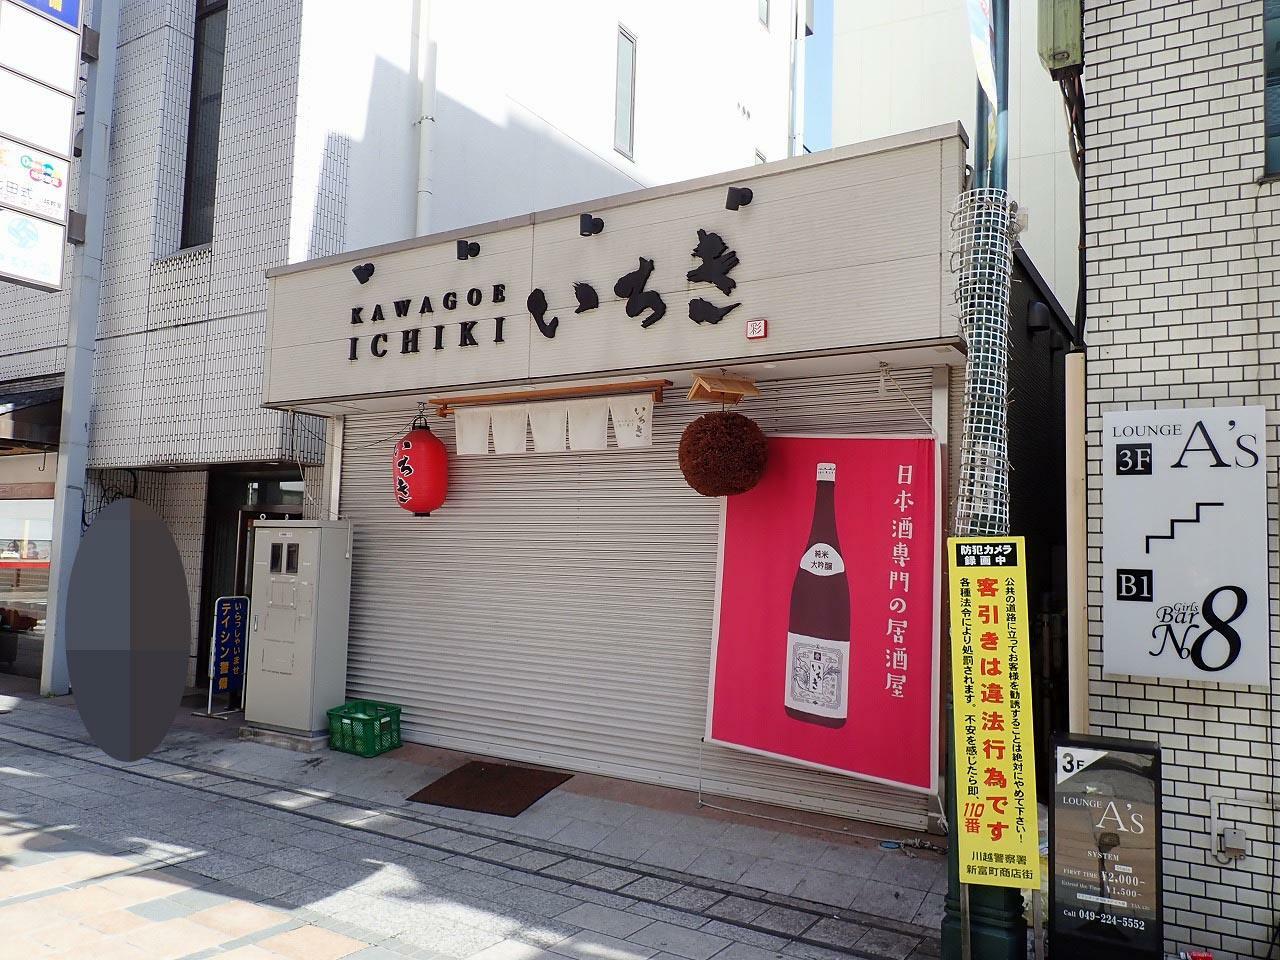 お店は本川越駅から徒歩約2分のところにありました